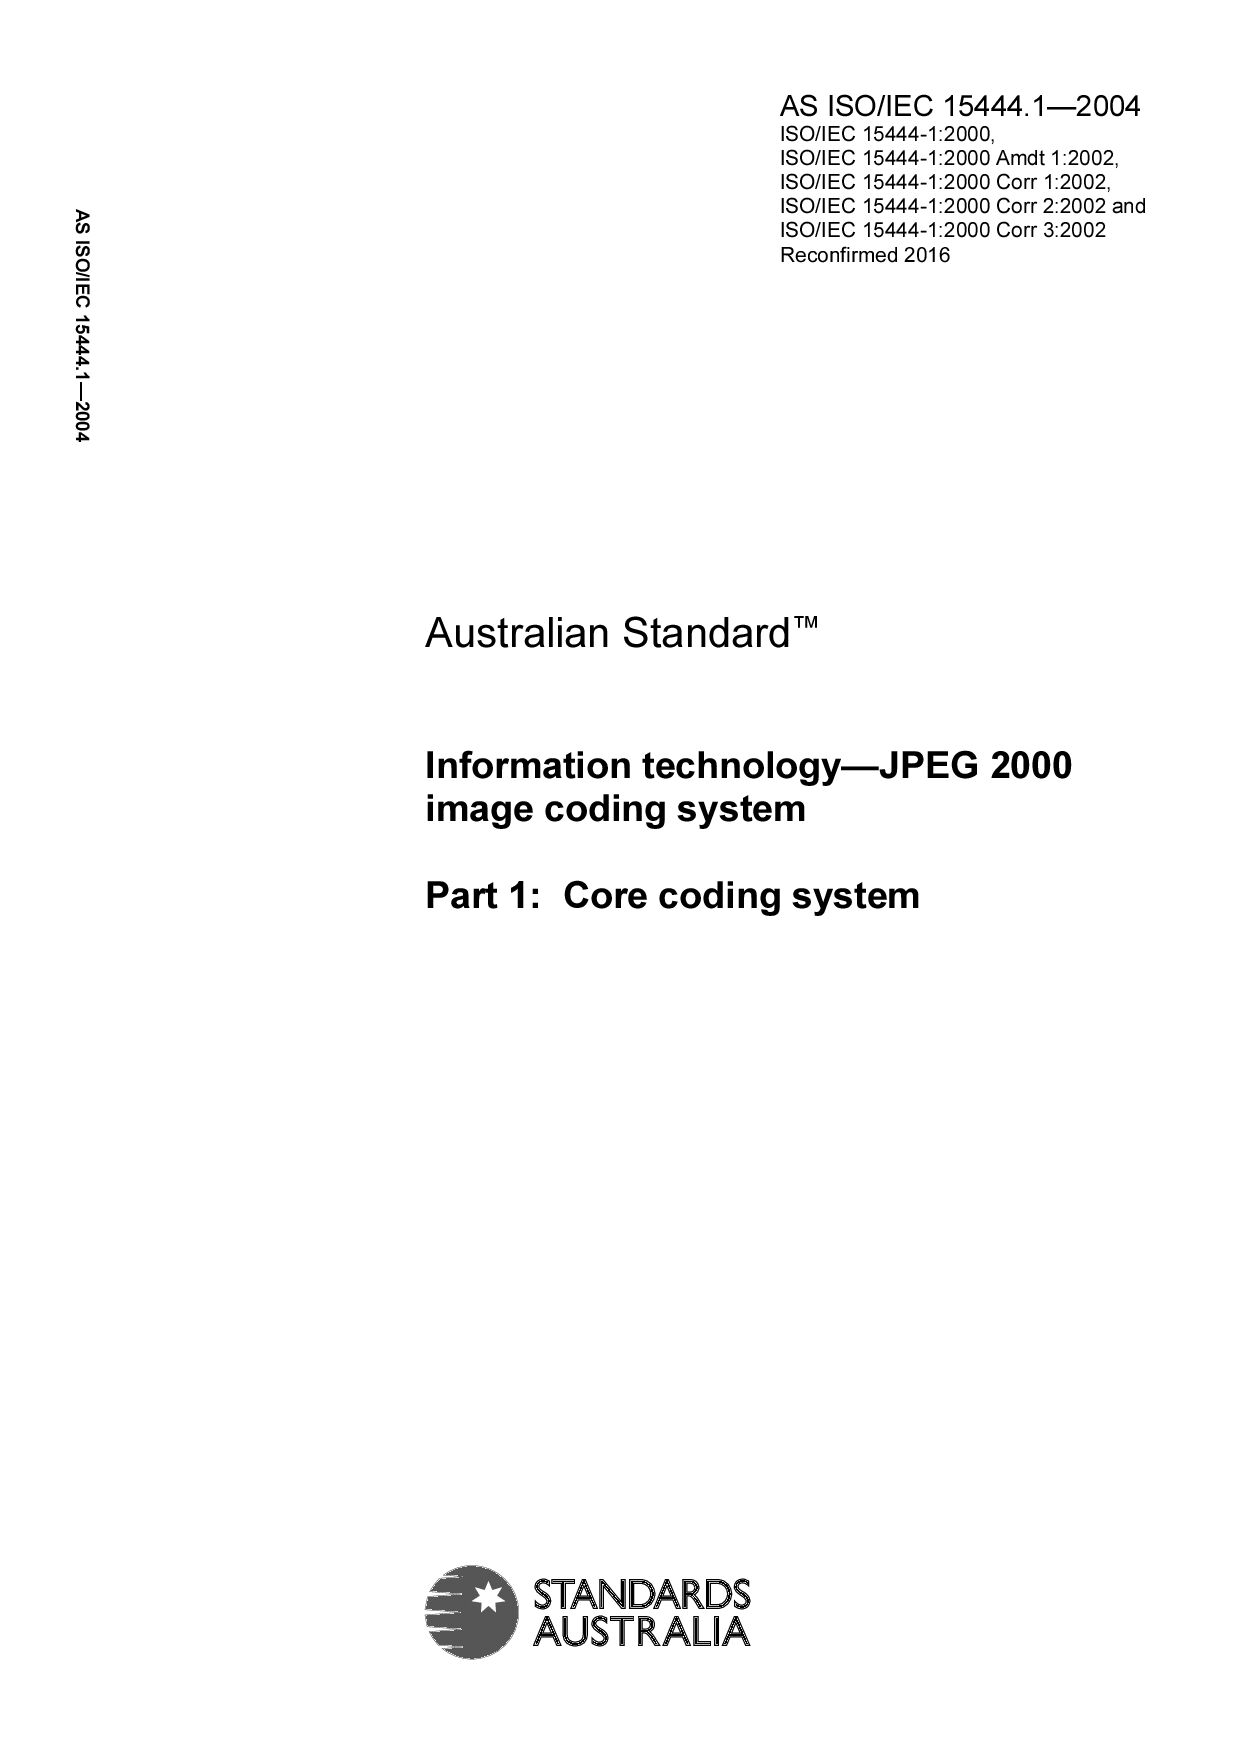 AS ISO/IEC 15444.1:2004(R2016)封面图